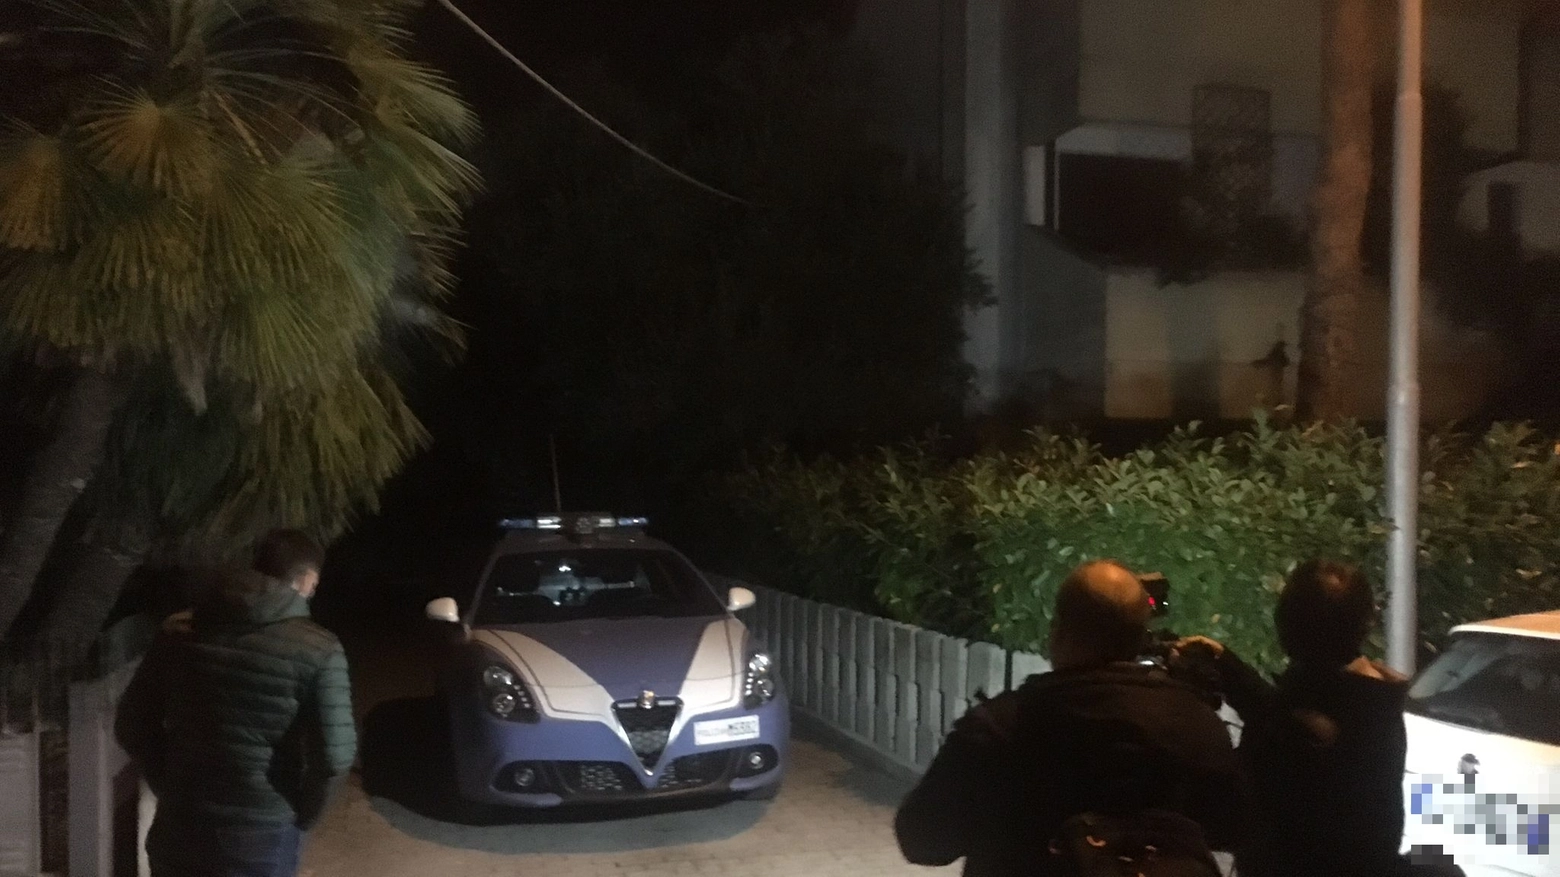 La polizia davanti alla casa della tragedia in via Montefeltro a Fano (foto Toni)